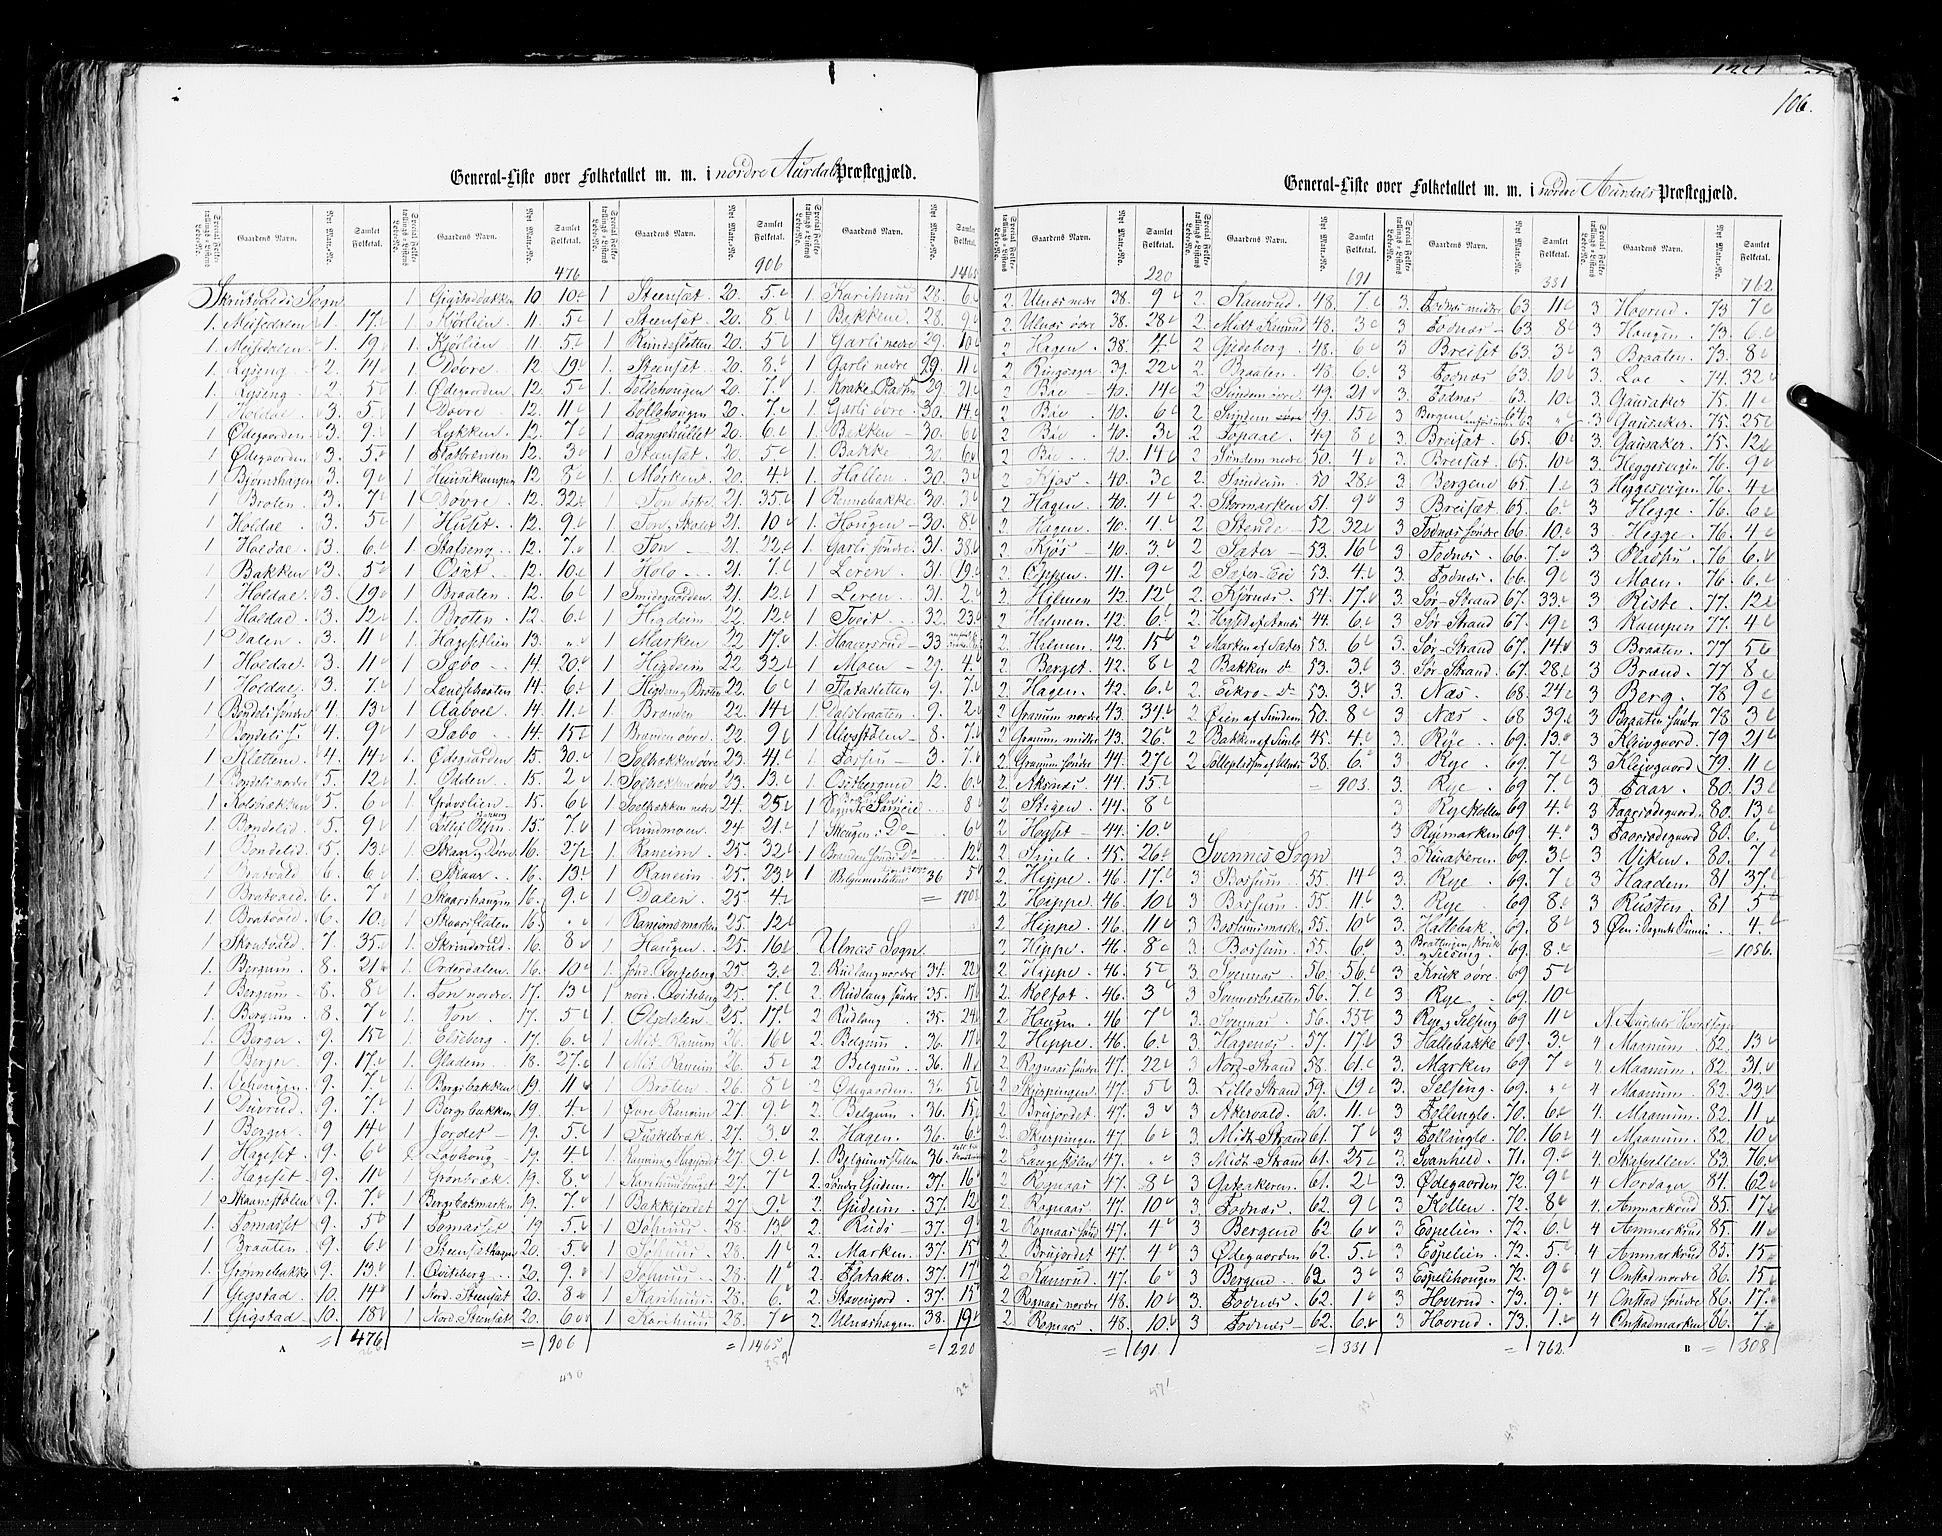 RA, Census 1855, vol. 2: Kristians amt, Buskerud amt og Jarlsberg og Larvik amt, 1855, p. 106